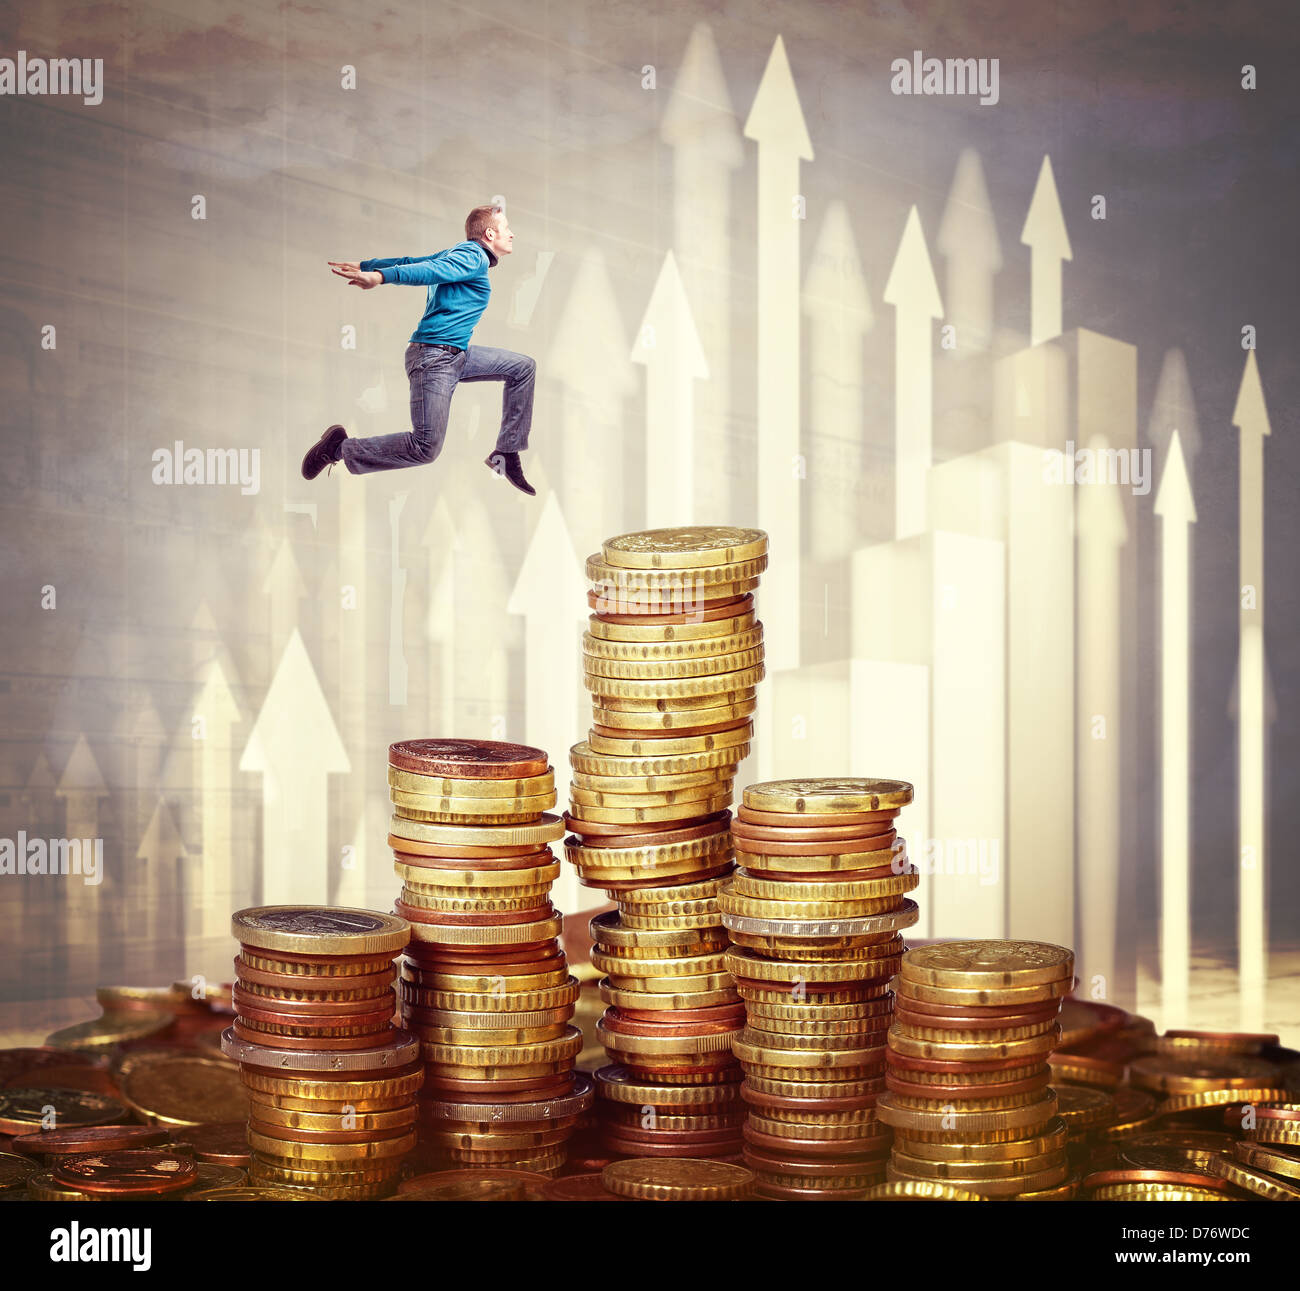 Hombre saltar por encima de los montones de dinero euro Foto de stock